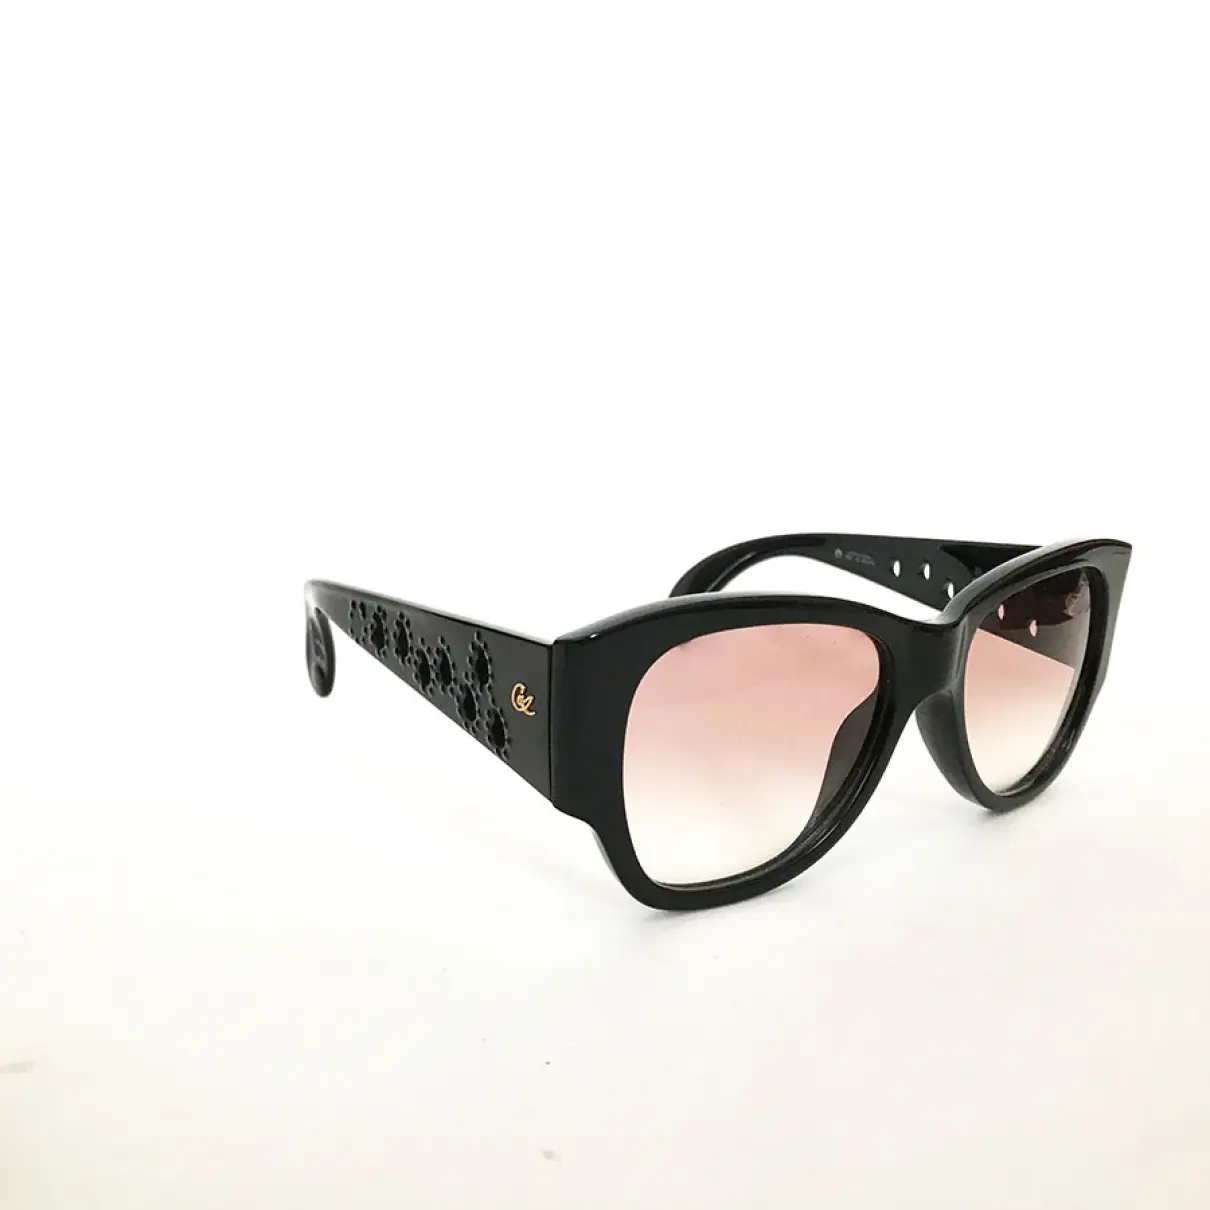 Buy Christian Lacroix Sunglasses online - Vintage